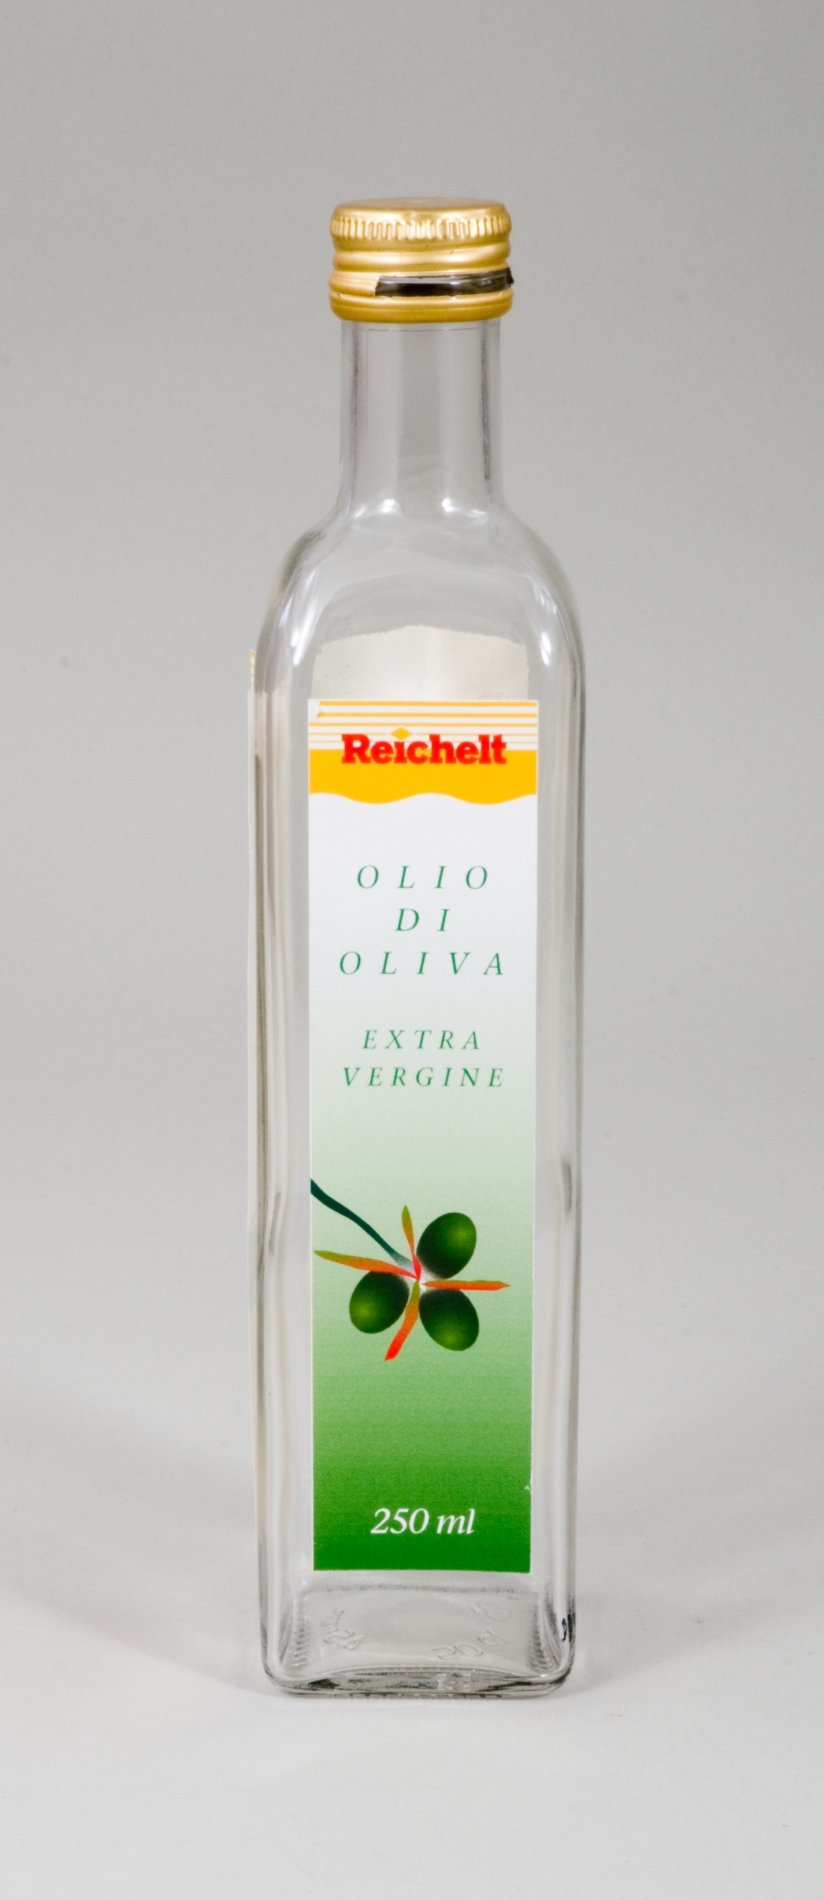 Flasche Olivenöl - 250ml - der Firma "Reichelt" (Stiftung Domäne Dahlem - Landgut und Museum, Weiternutzung nur mit Genehmigung des Museums CC BY-NC-SA)